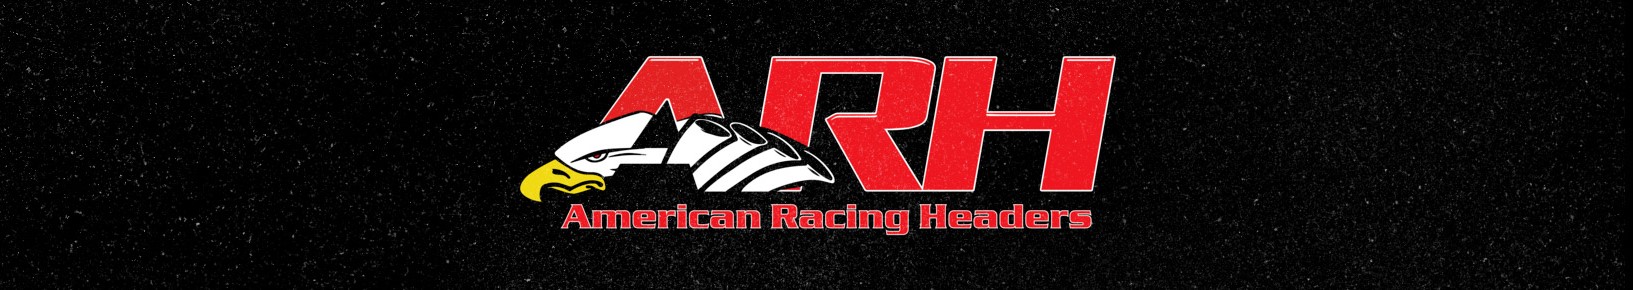 American_Racing_Headers_Brand_Page_Banner.jpg